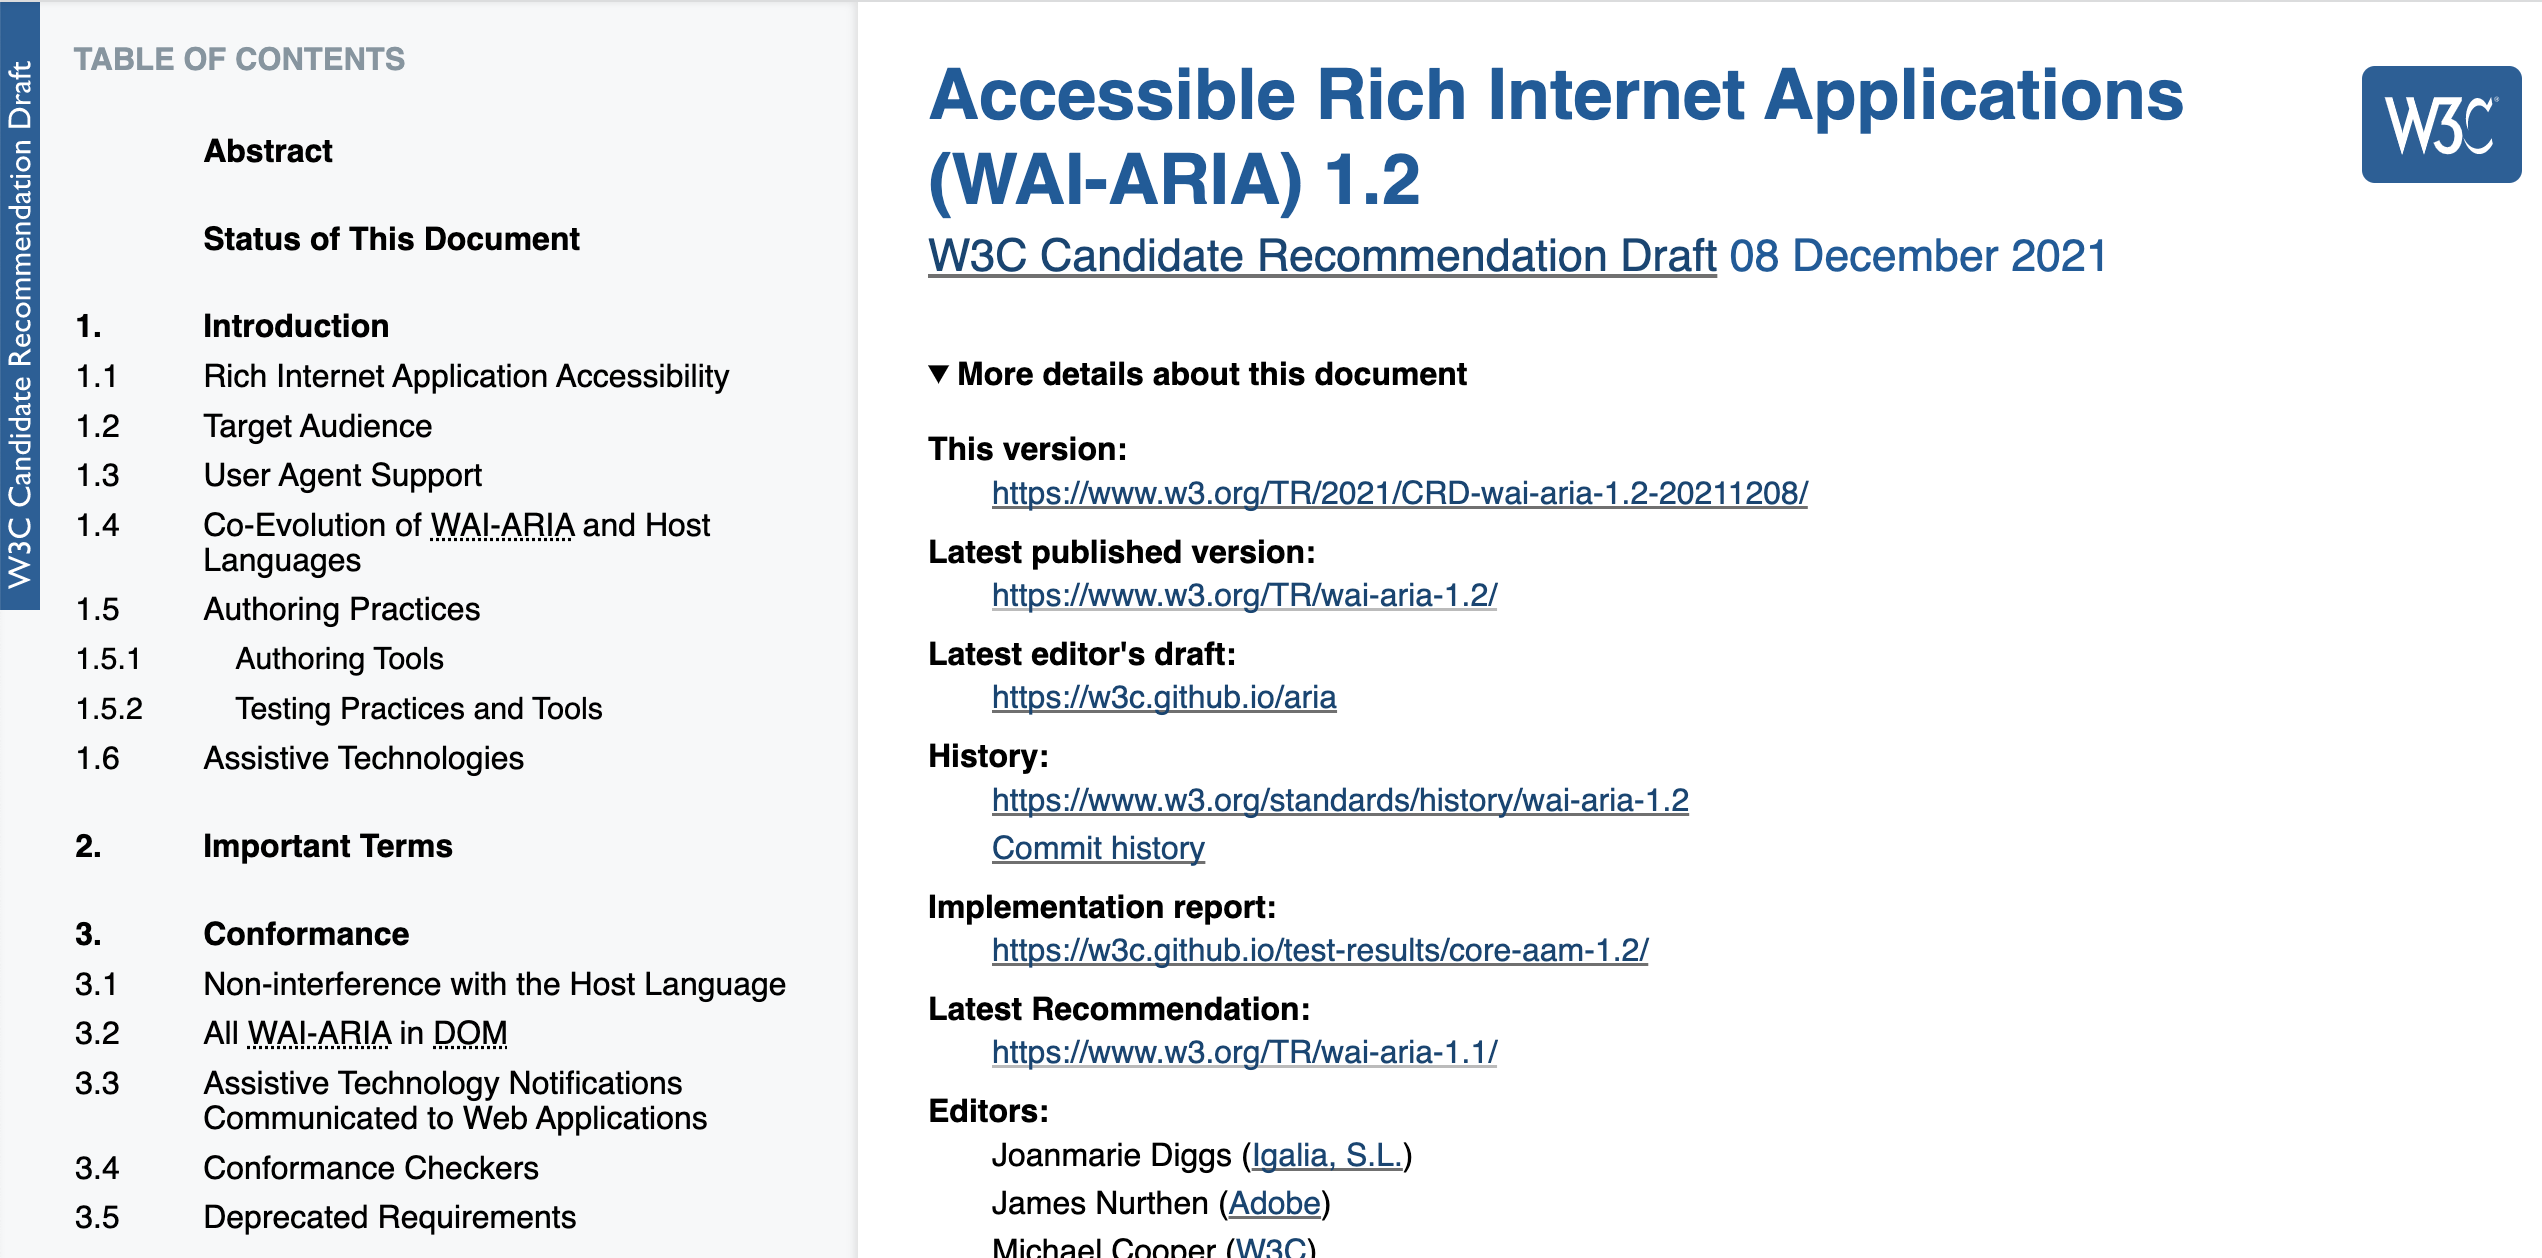 The WAI ARIA homepage